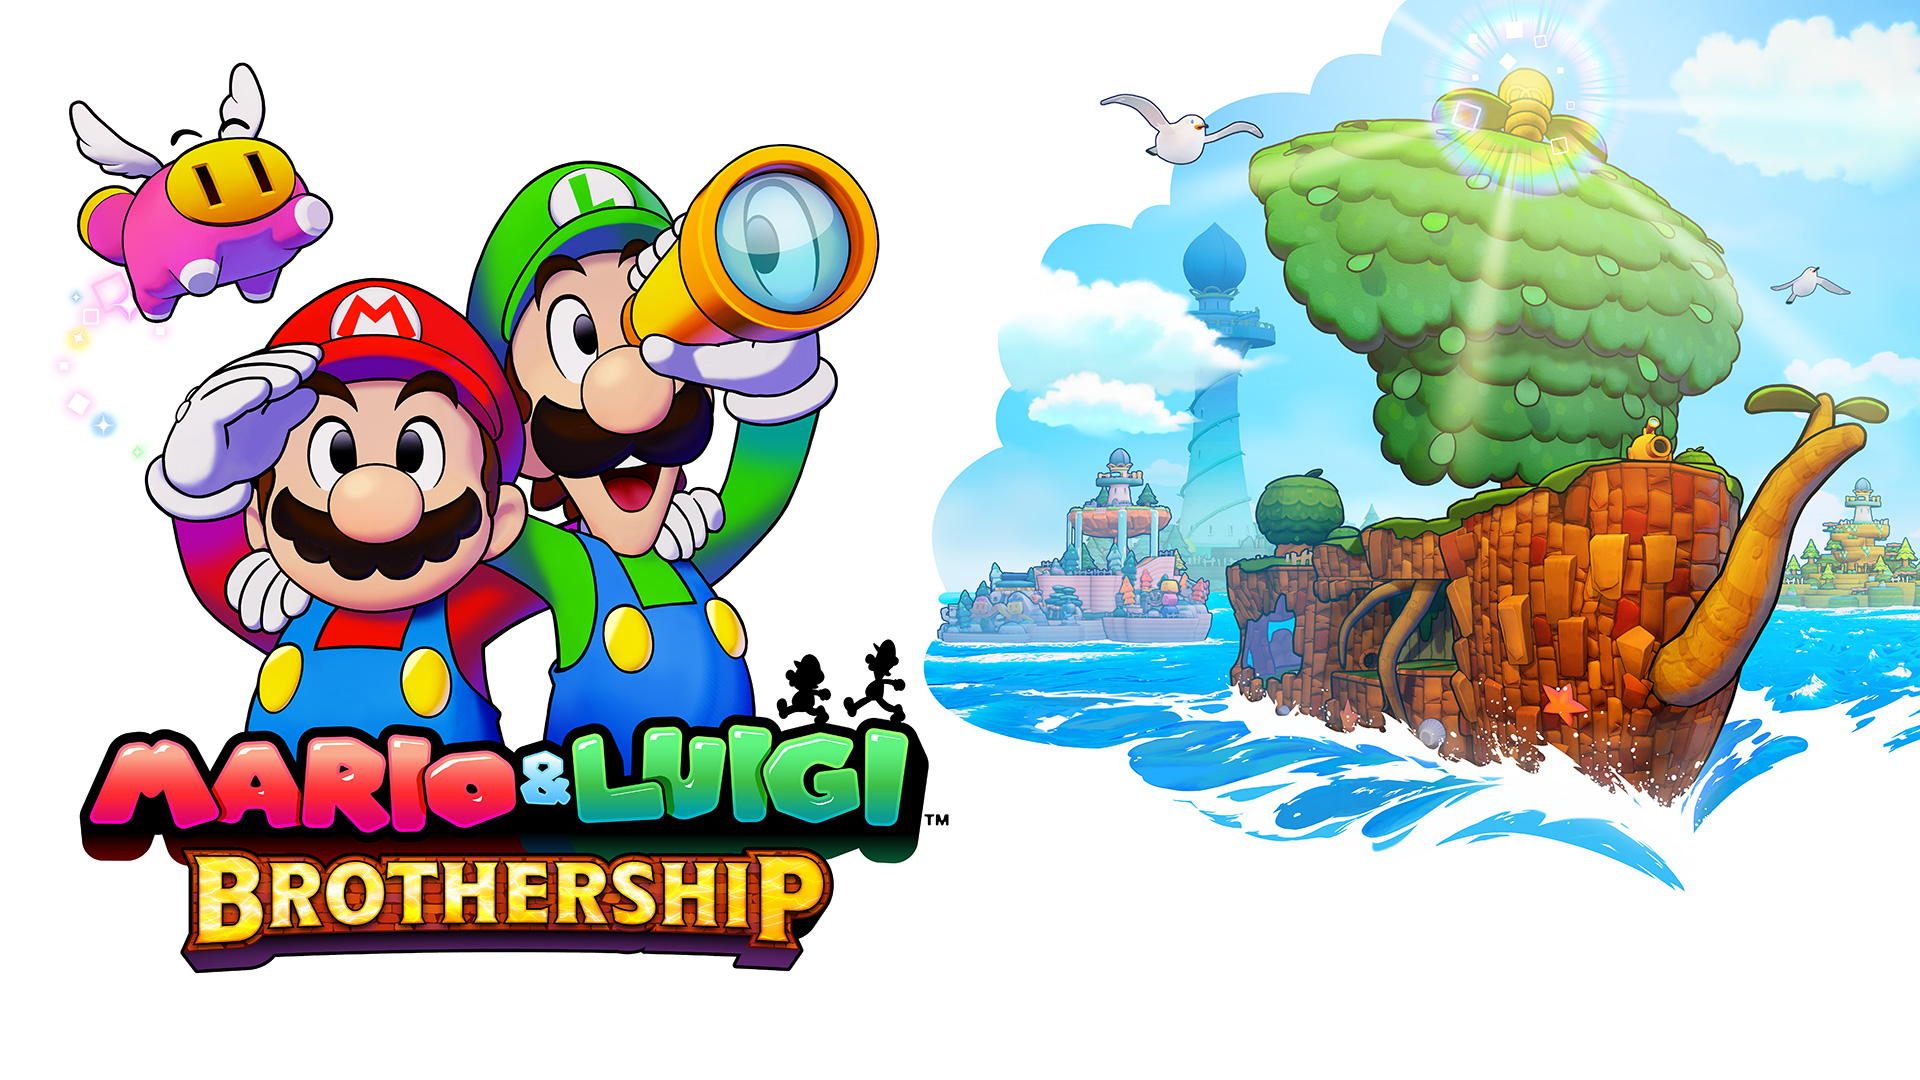 It’s RPG season with Mario & Luigi: Brothership